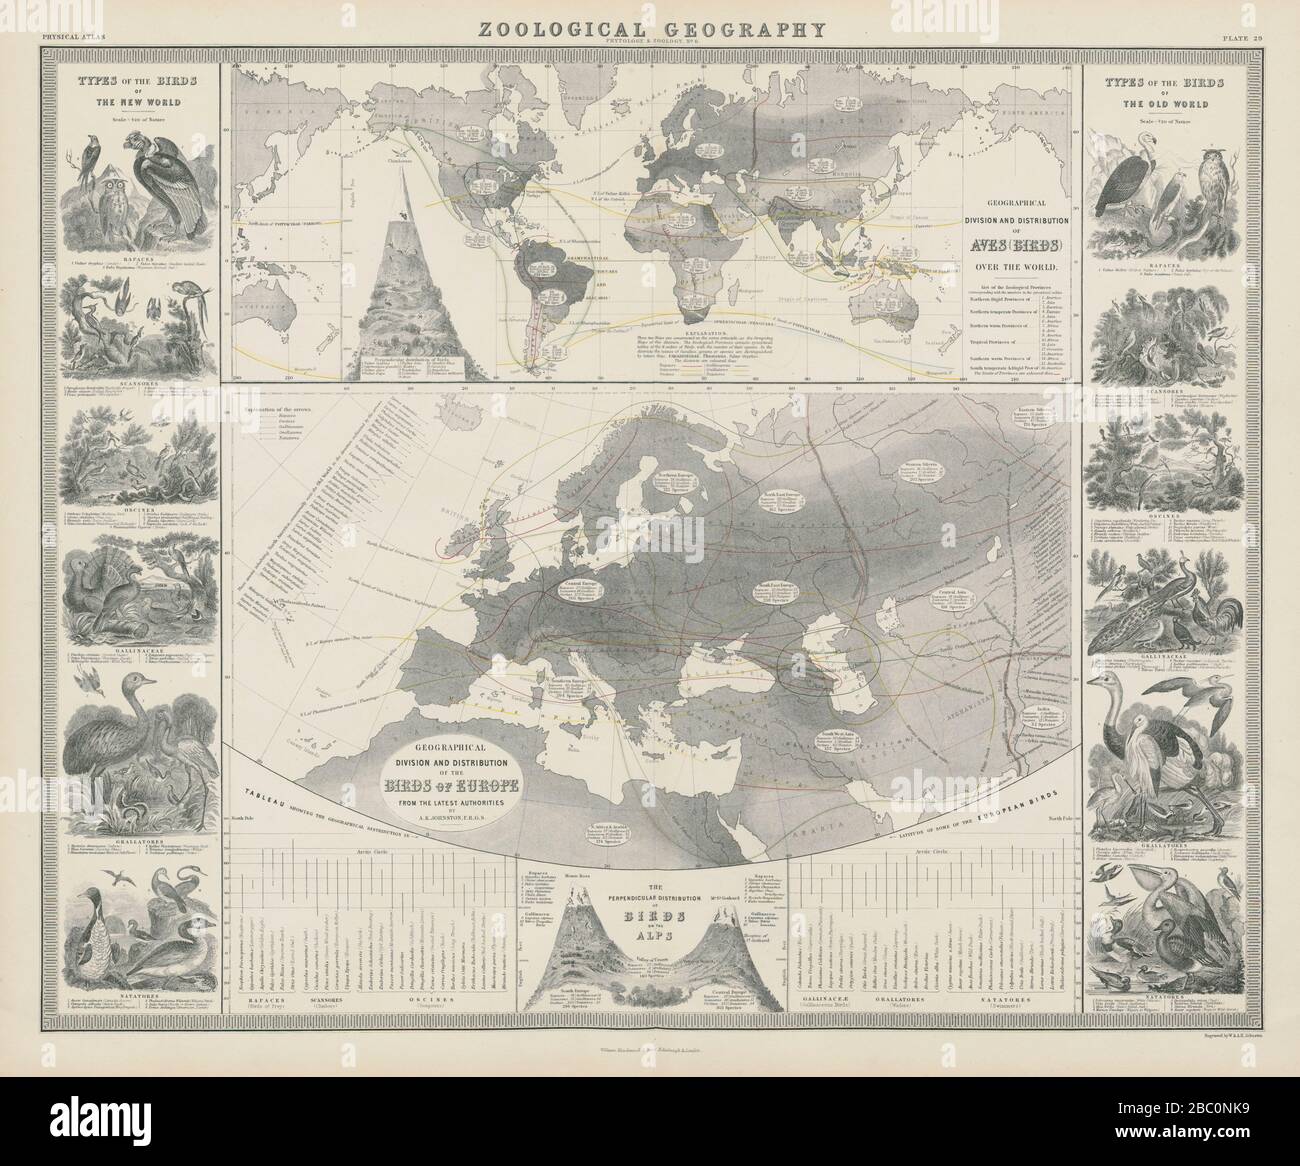 Geografia zoologica. Aves (Birds) distribuzione mondo & Europa 1856 vecchia mappa Foto Stock